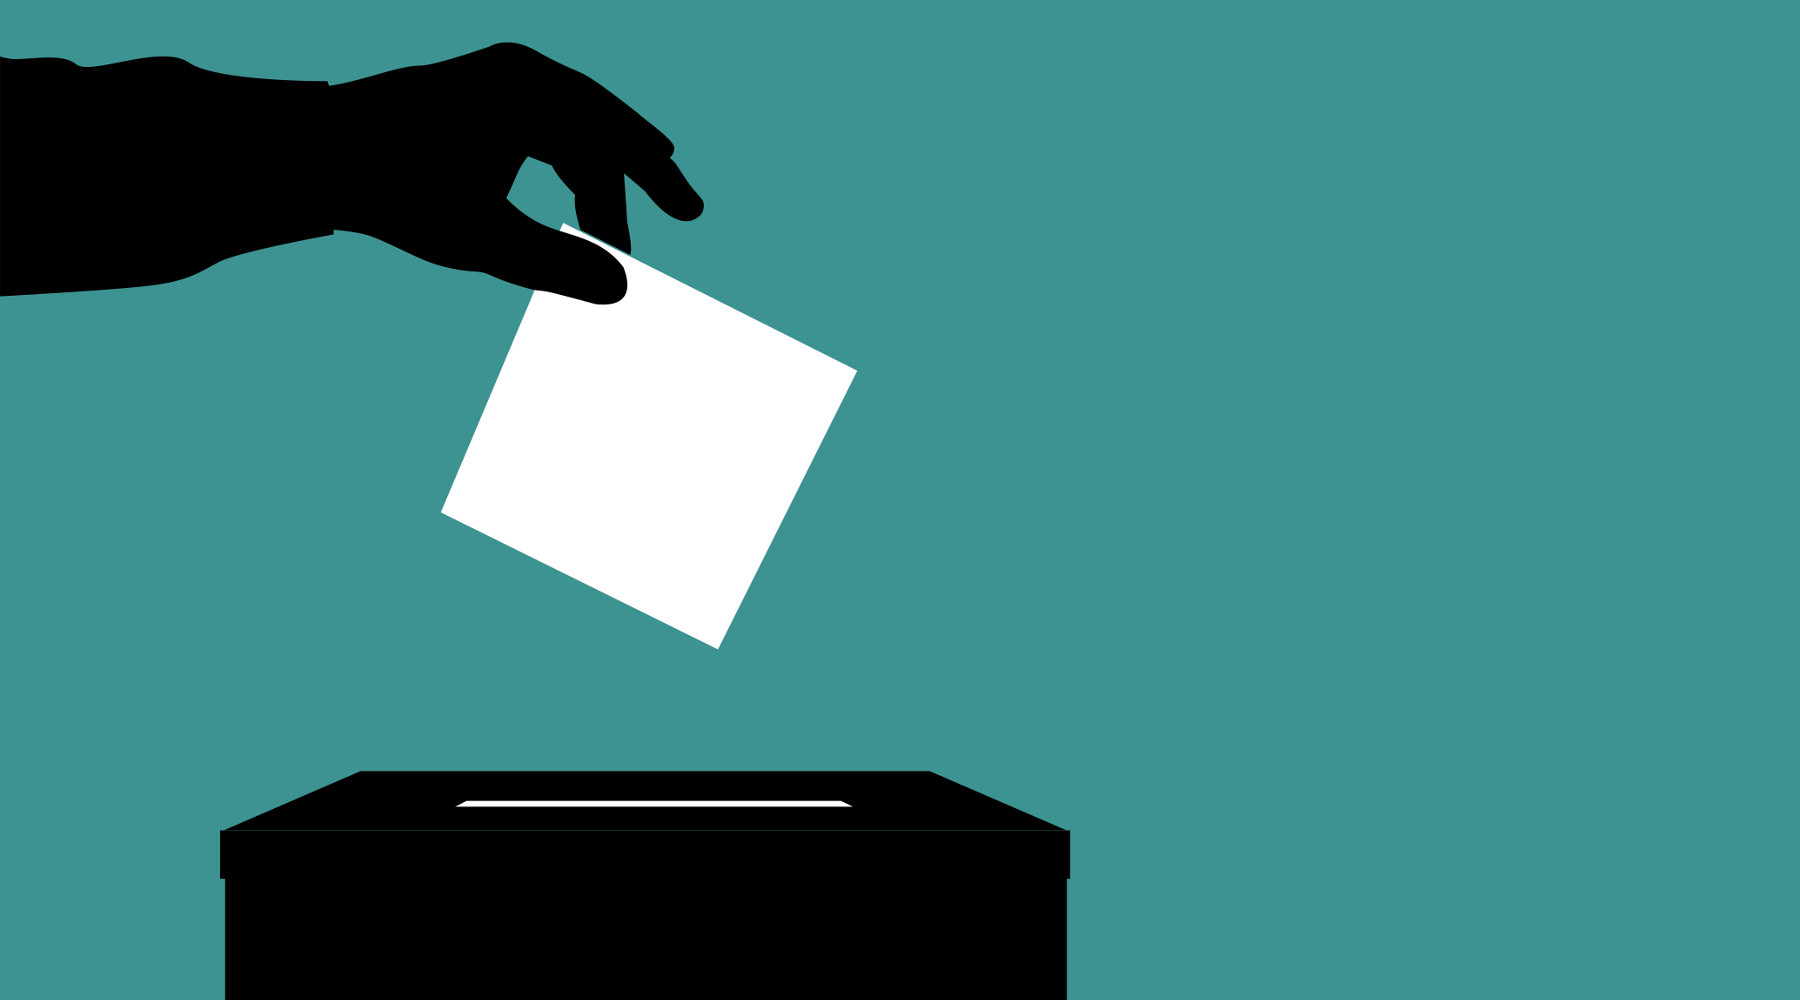 Referendum sulla caccia: mano depone scheda nell'urna elettorale